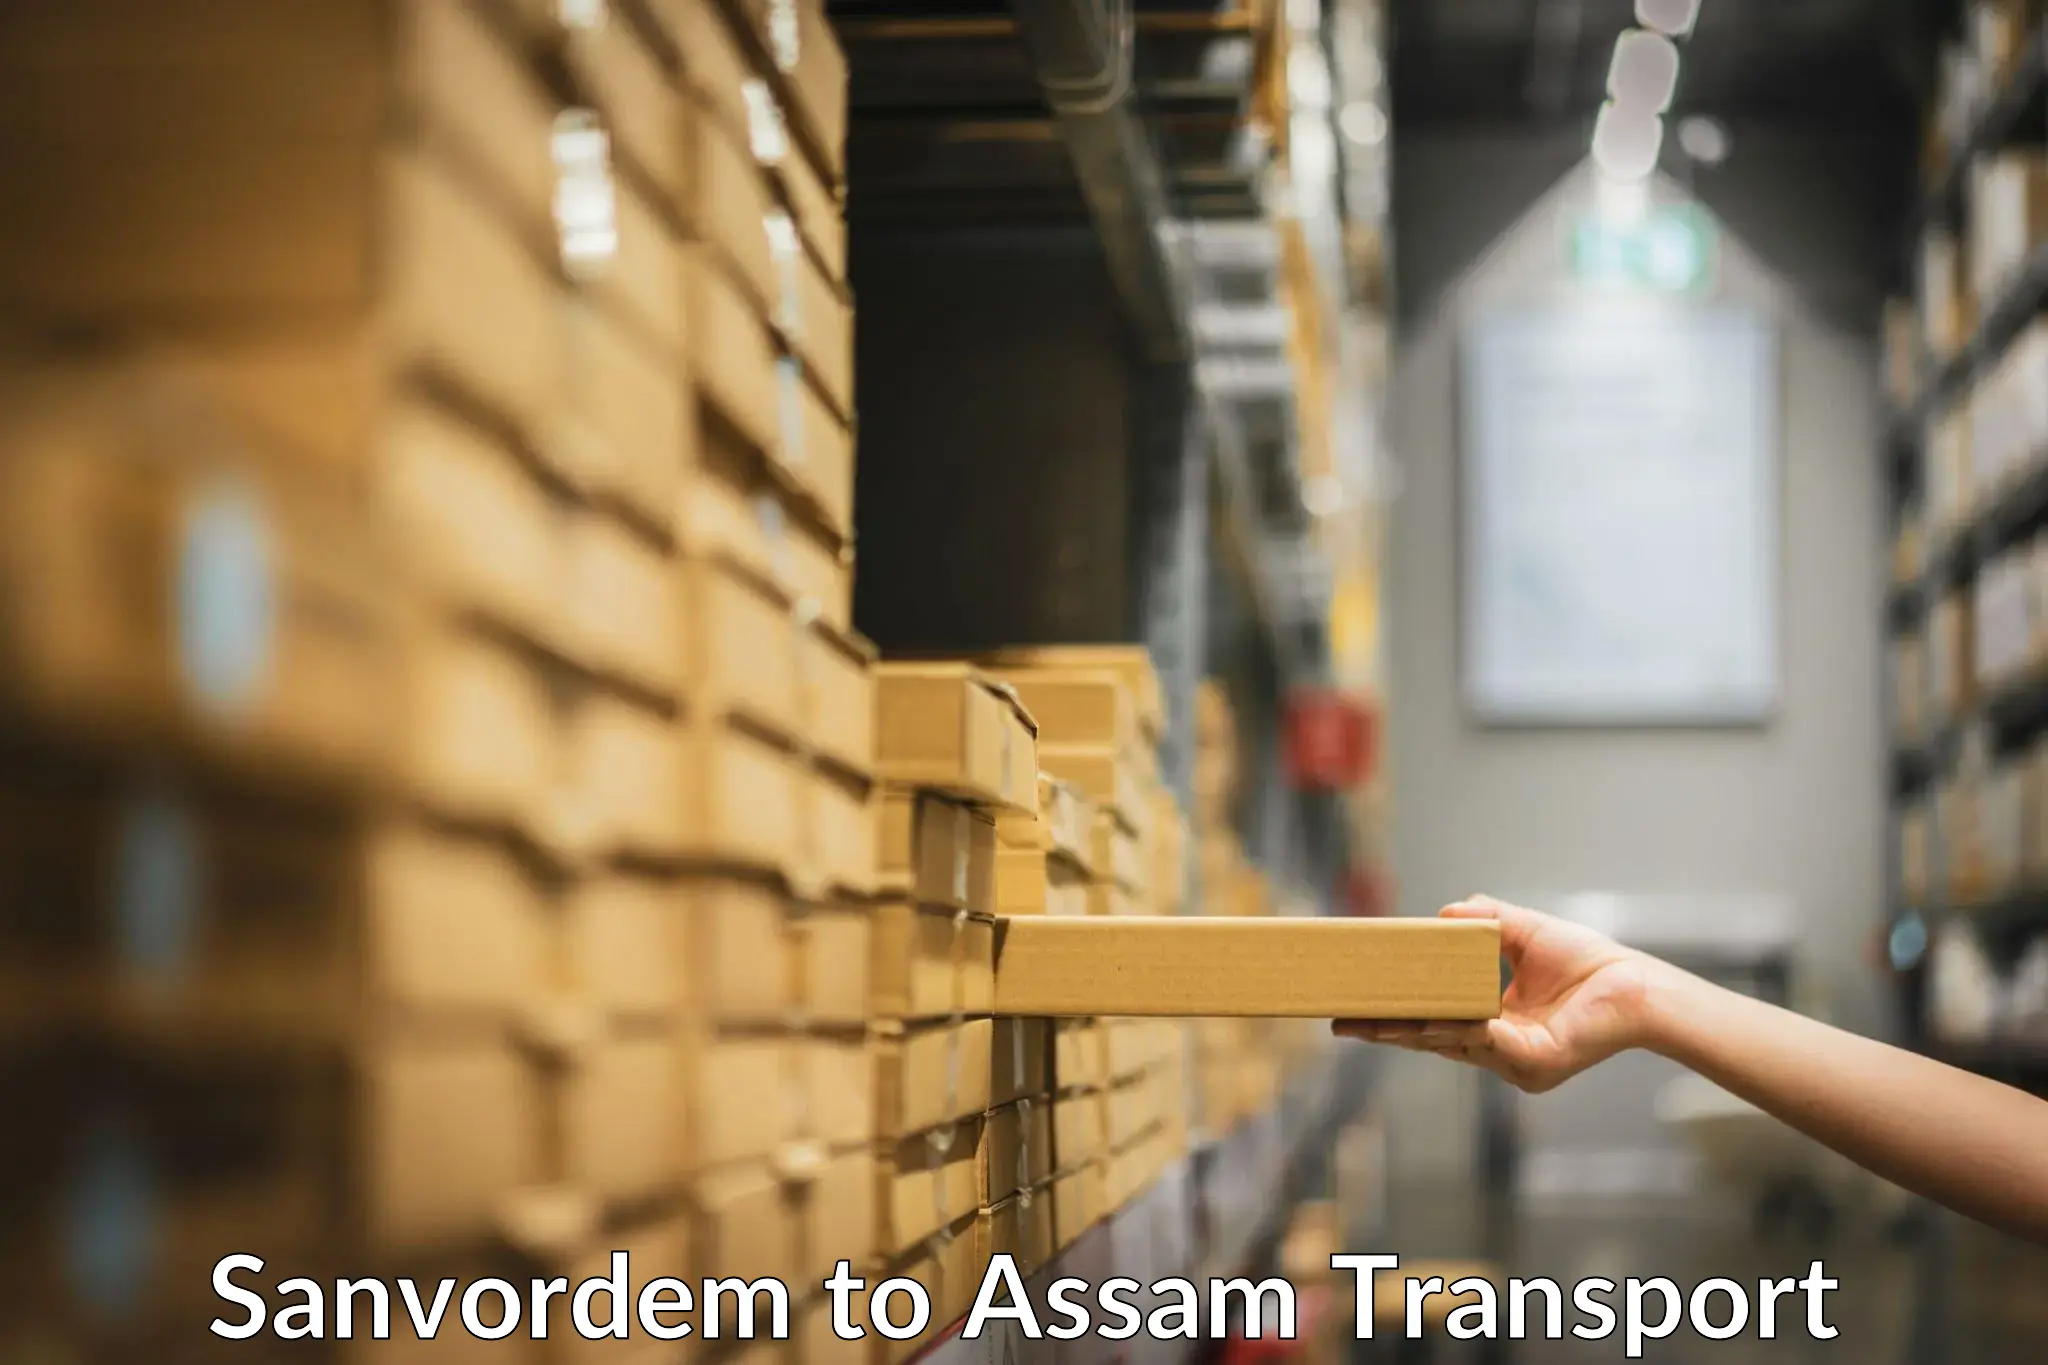 Road transport online services Sanvordem to Assam